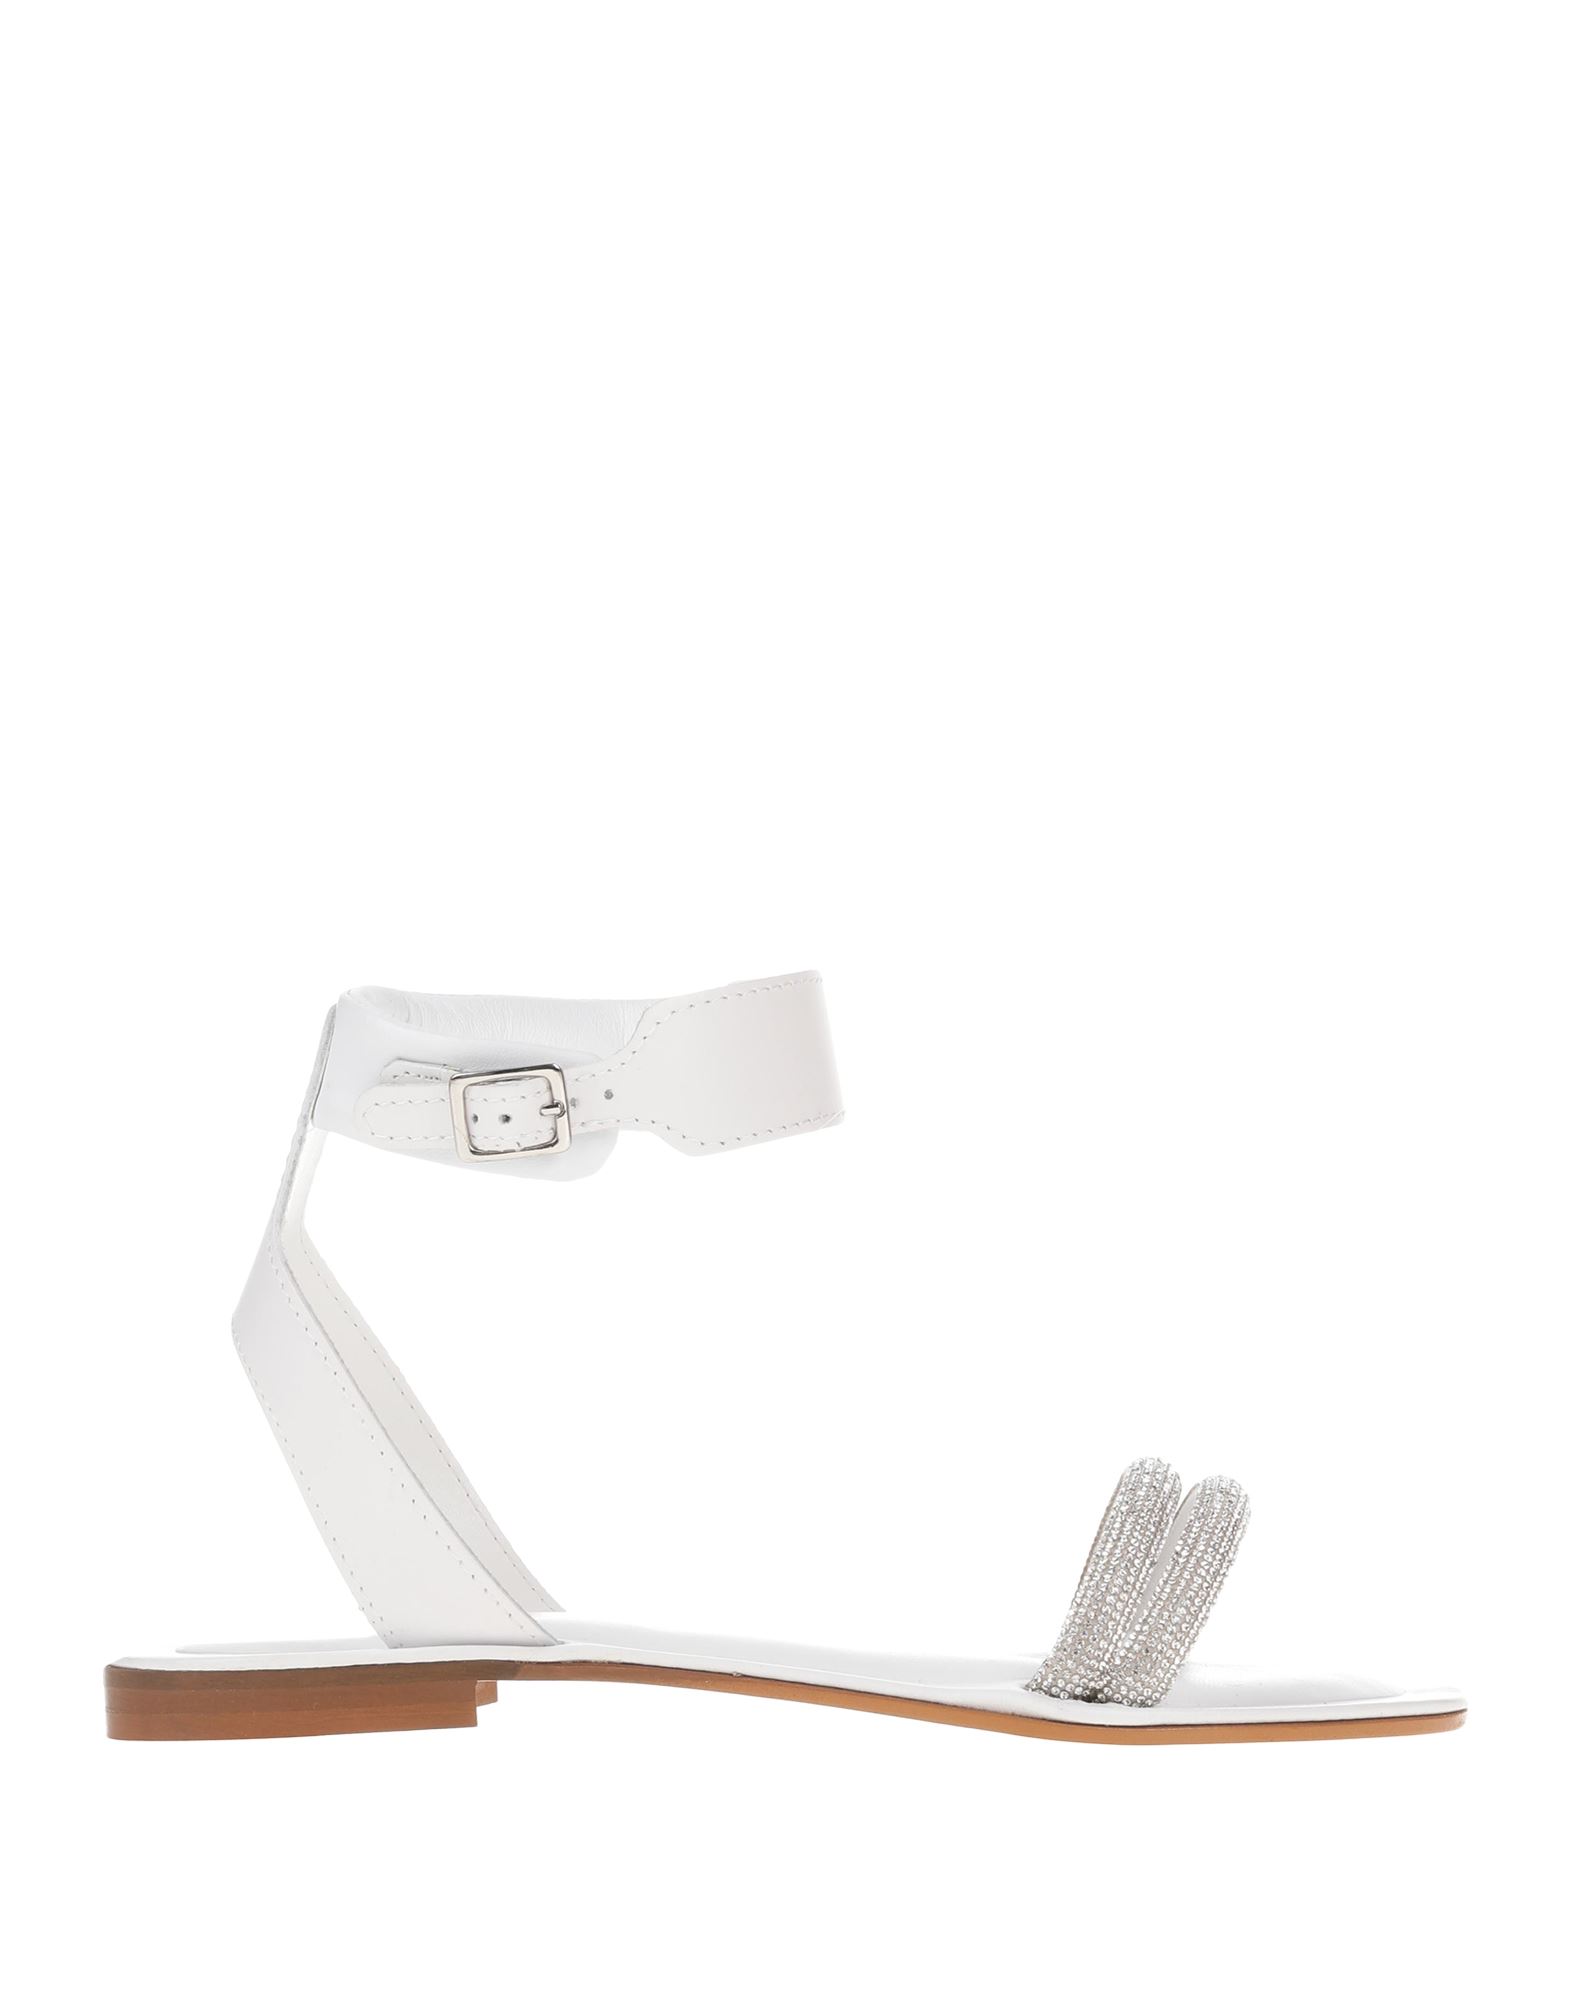 Cécile Woman Sandals White Size 8 Leather